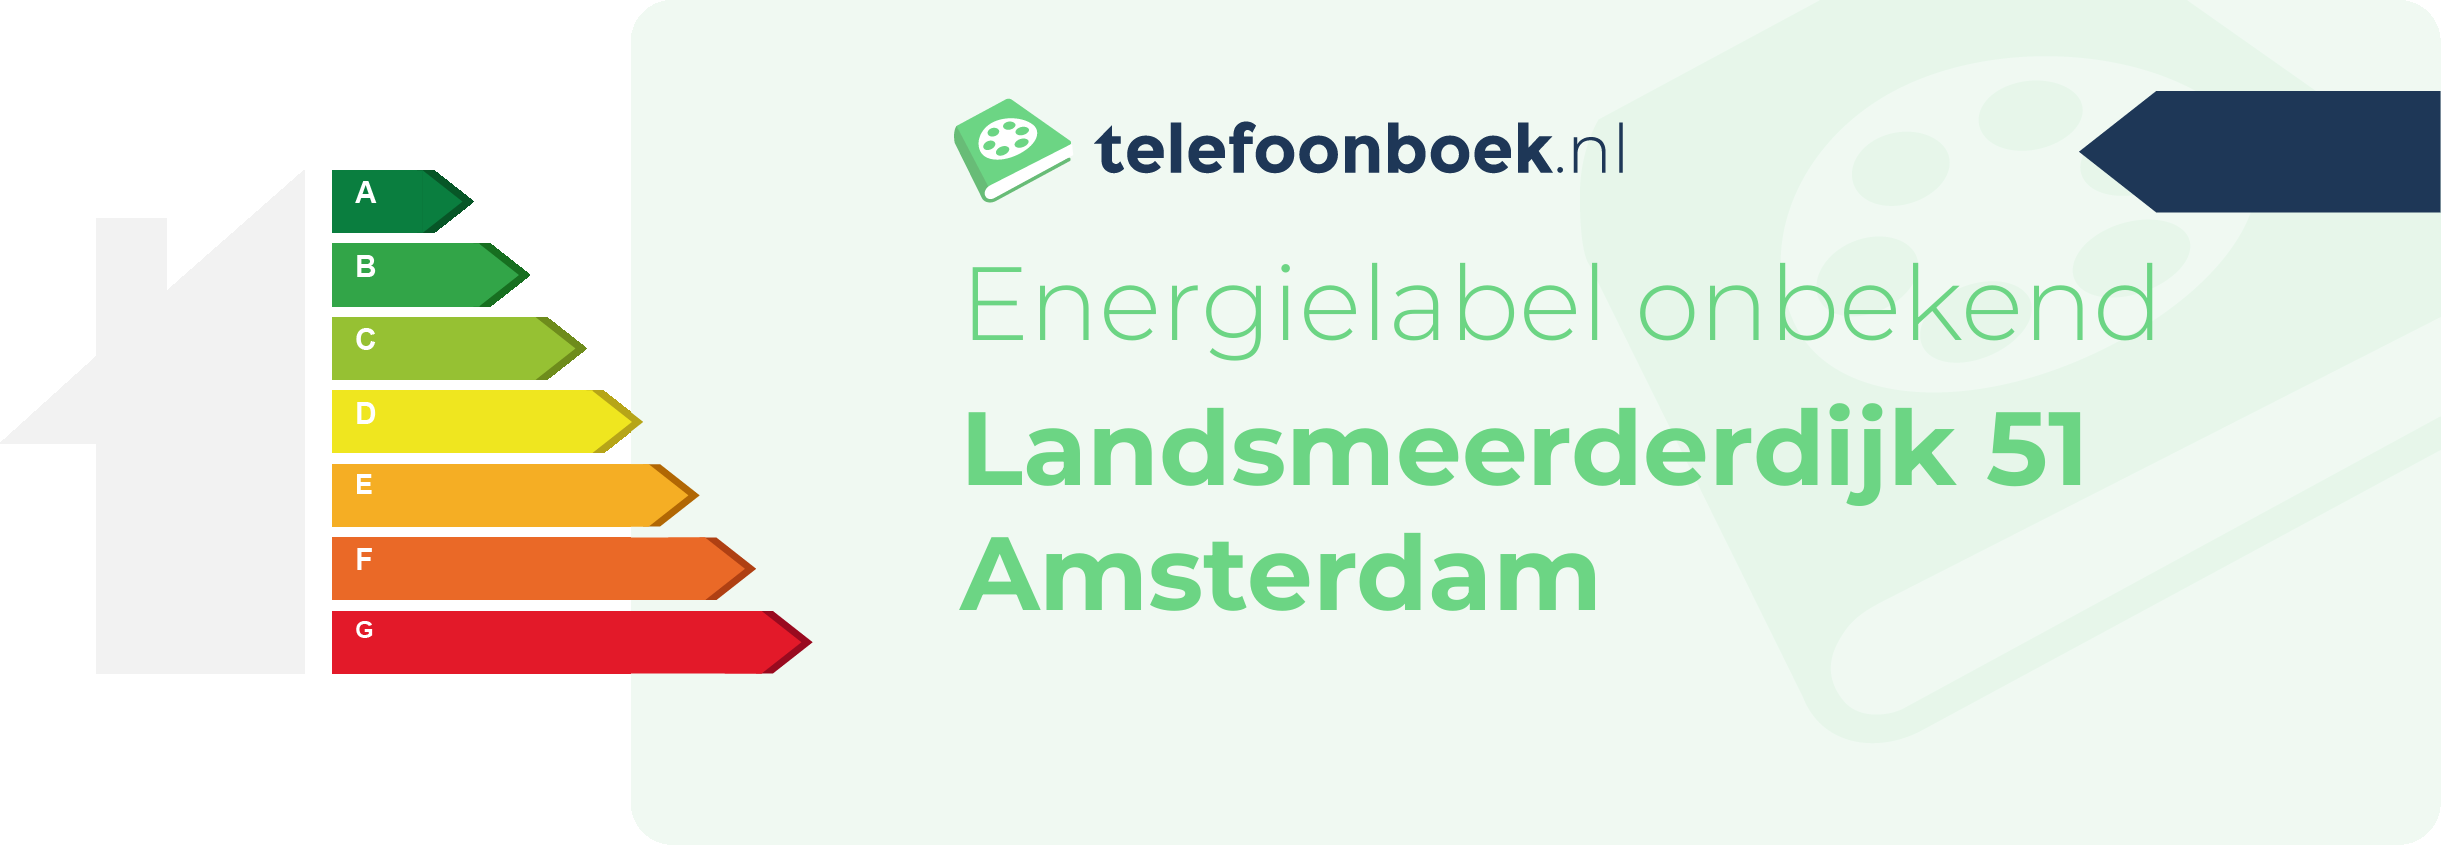 Energielabel Landsmeerderdijk 51 Amsterdam